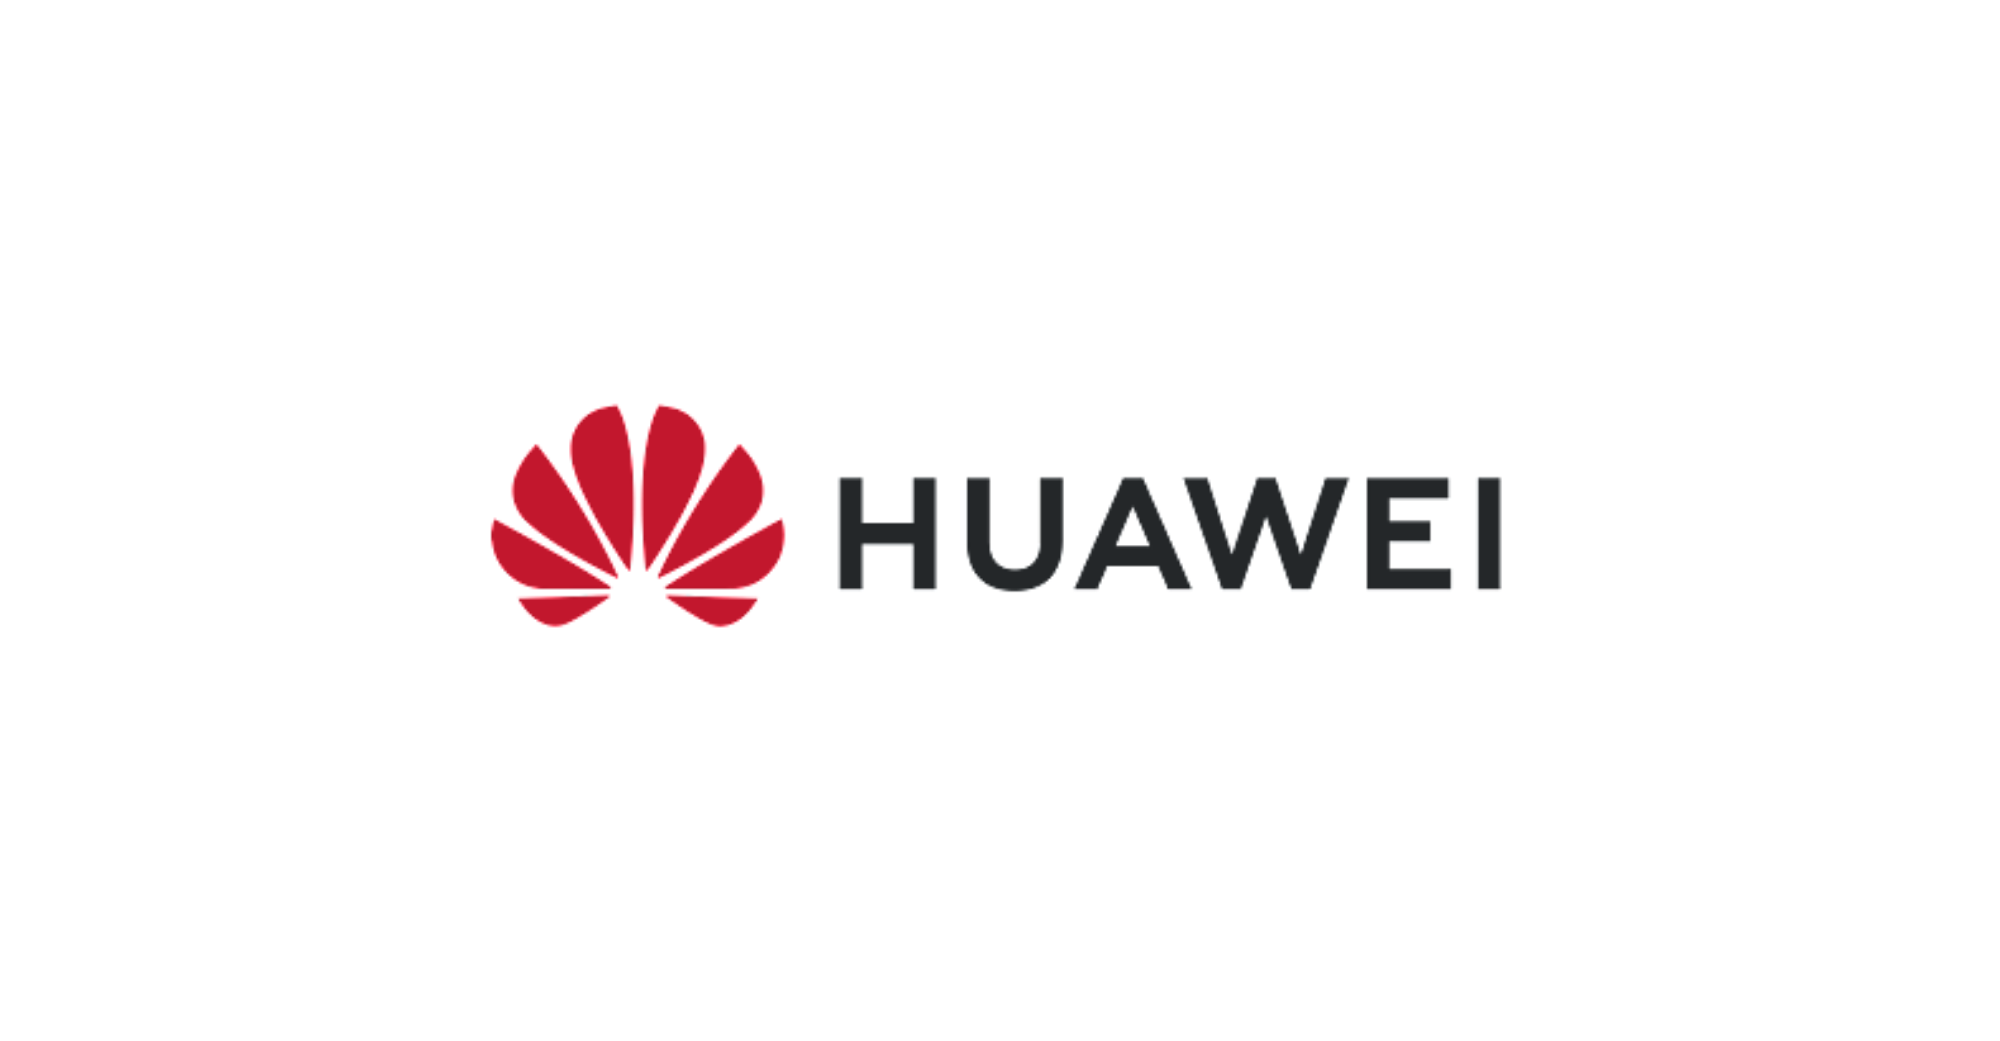 Huawei सेमीकंडक्टर डिवाइस निर्माण, फोटोरेसिस्ट और तीसरी पीढ़ी के सेमीकंडक्टर सामग्री में निवेश करता है